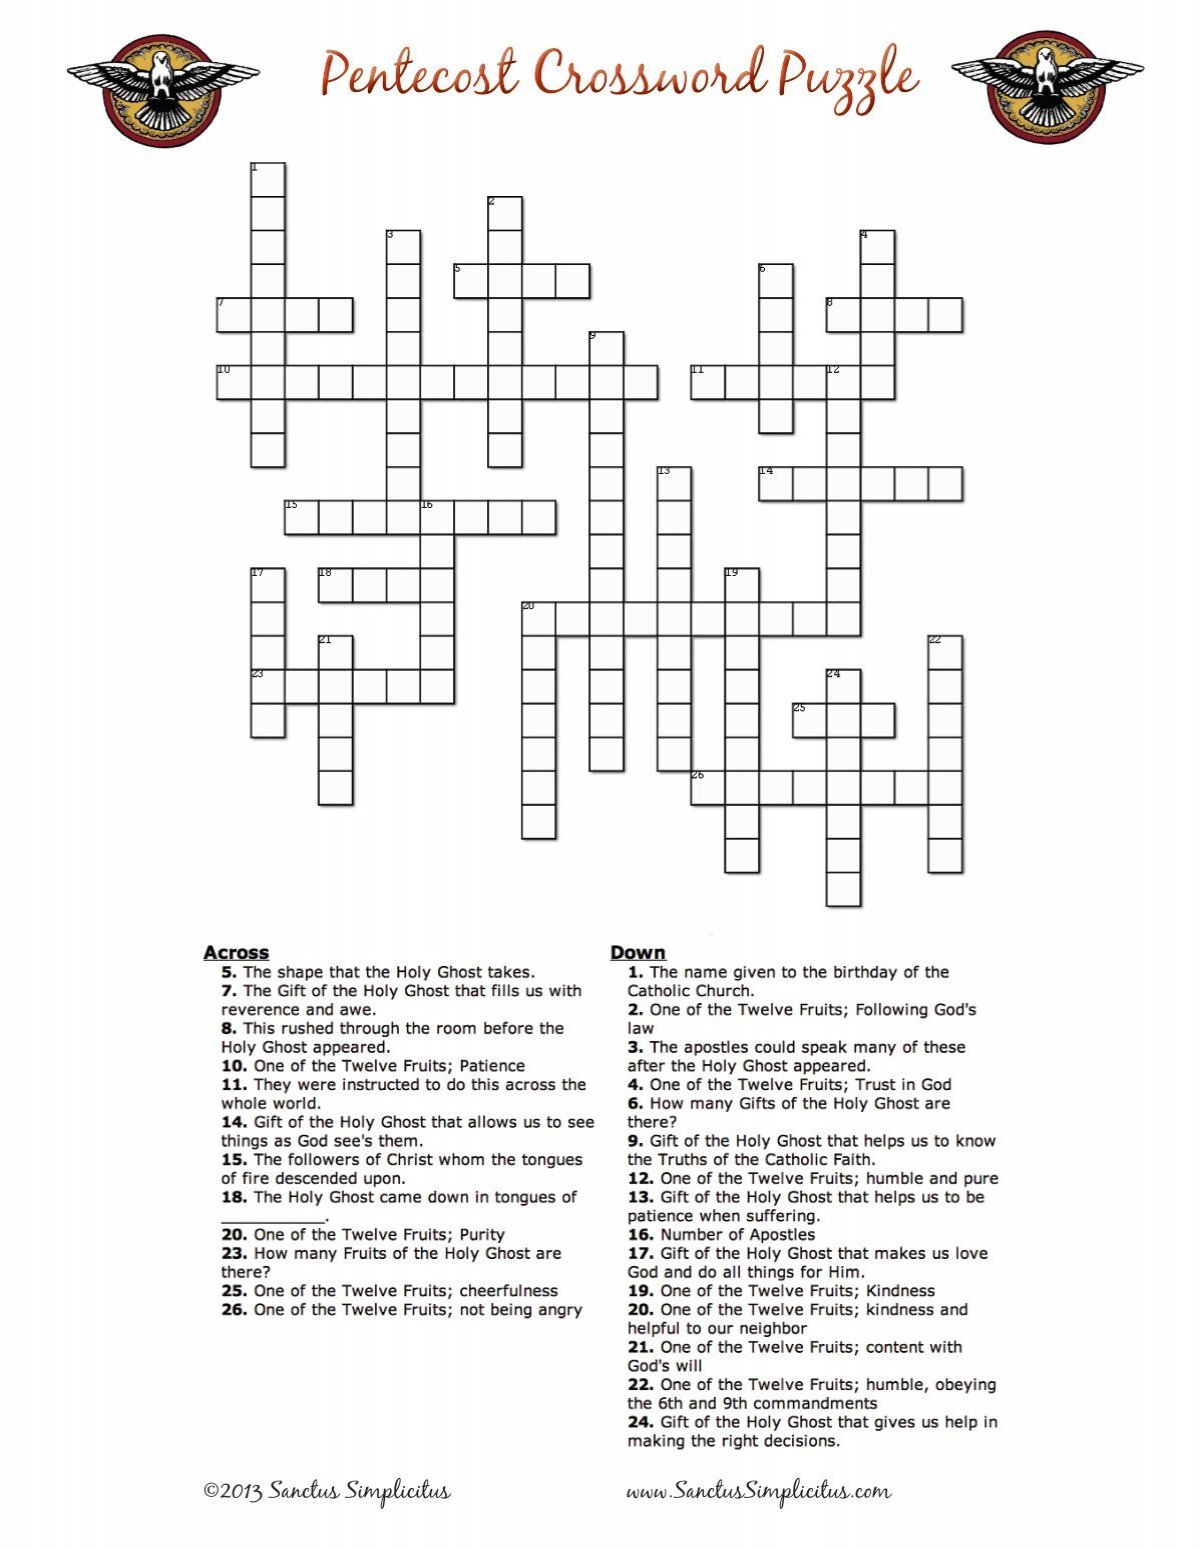 Pentecost Crossword Puzzle Sanctus Simplicitus